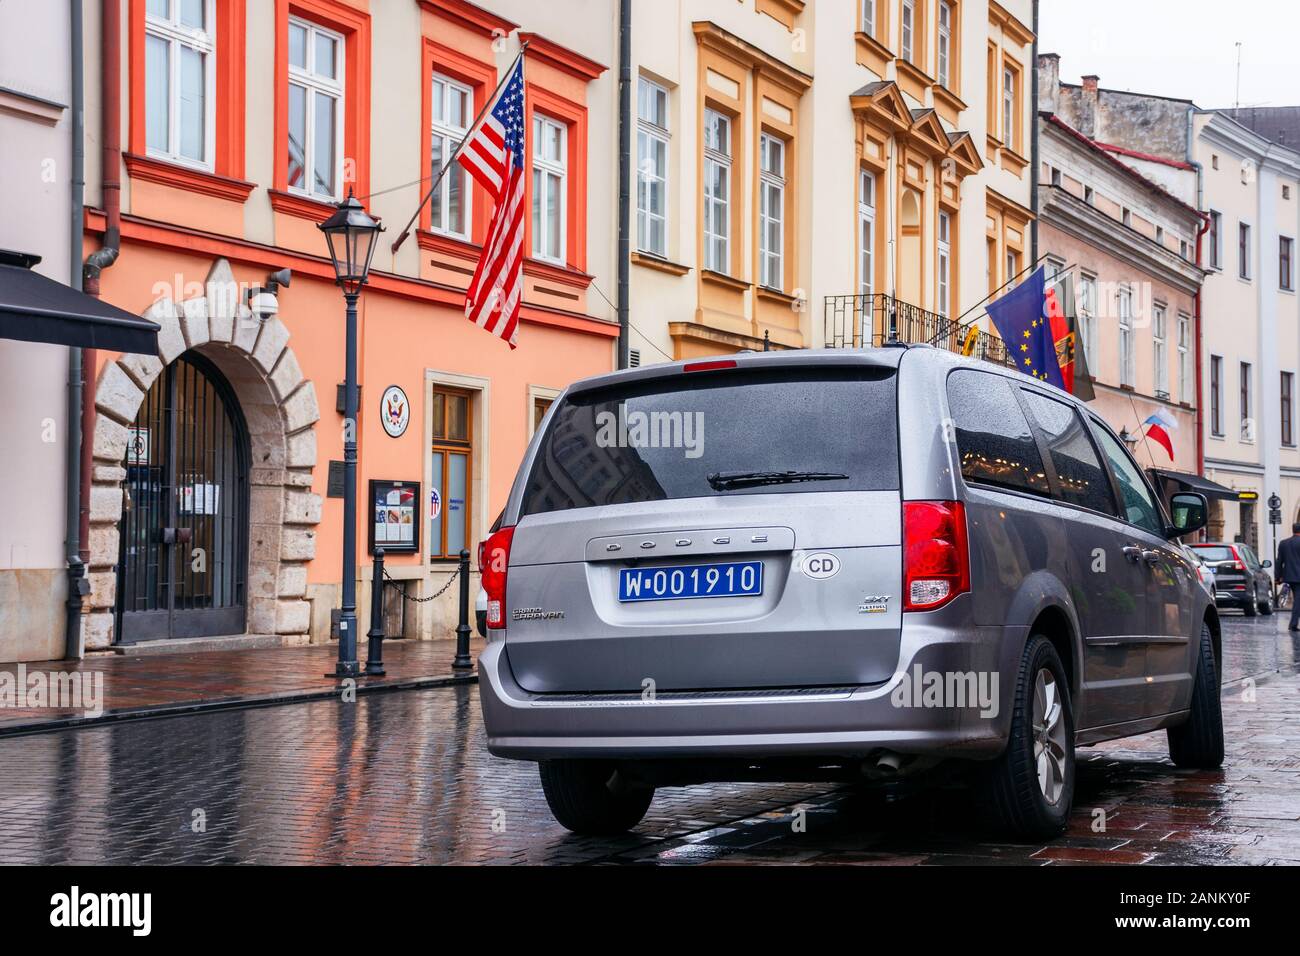 Krakau, Polen - Apr 30, 2019: Amerikanische Flagge auf der Fassade der Vereinigten Staaten Generalkonsulat Krakau im historischen Zentrum der Altstadt entfernt. Dodge Auto Stockfoto